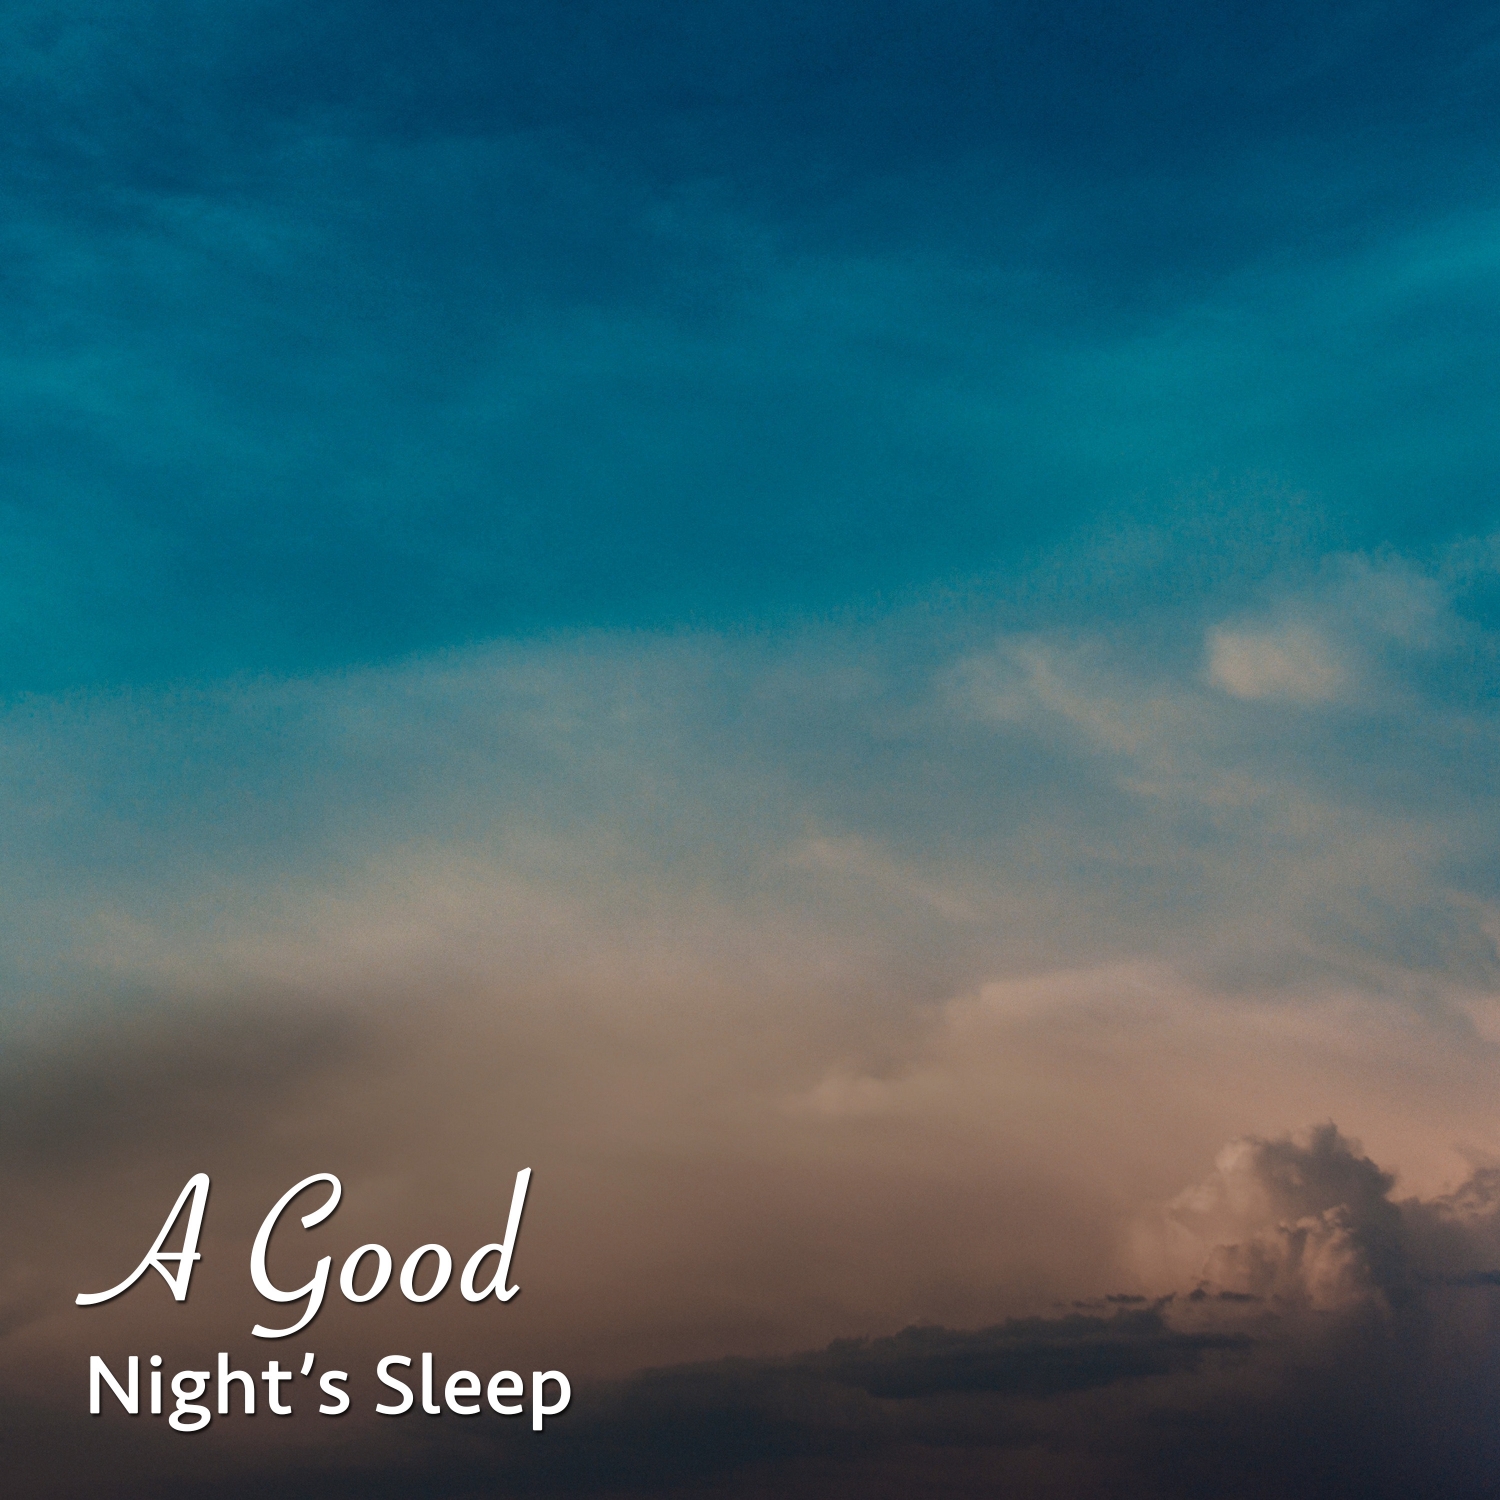 14 Rain Sleep Sounds - Loopable Rain Sounds for A Good Night's Sleep